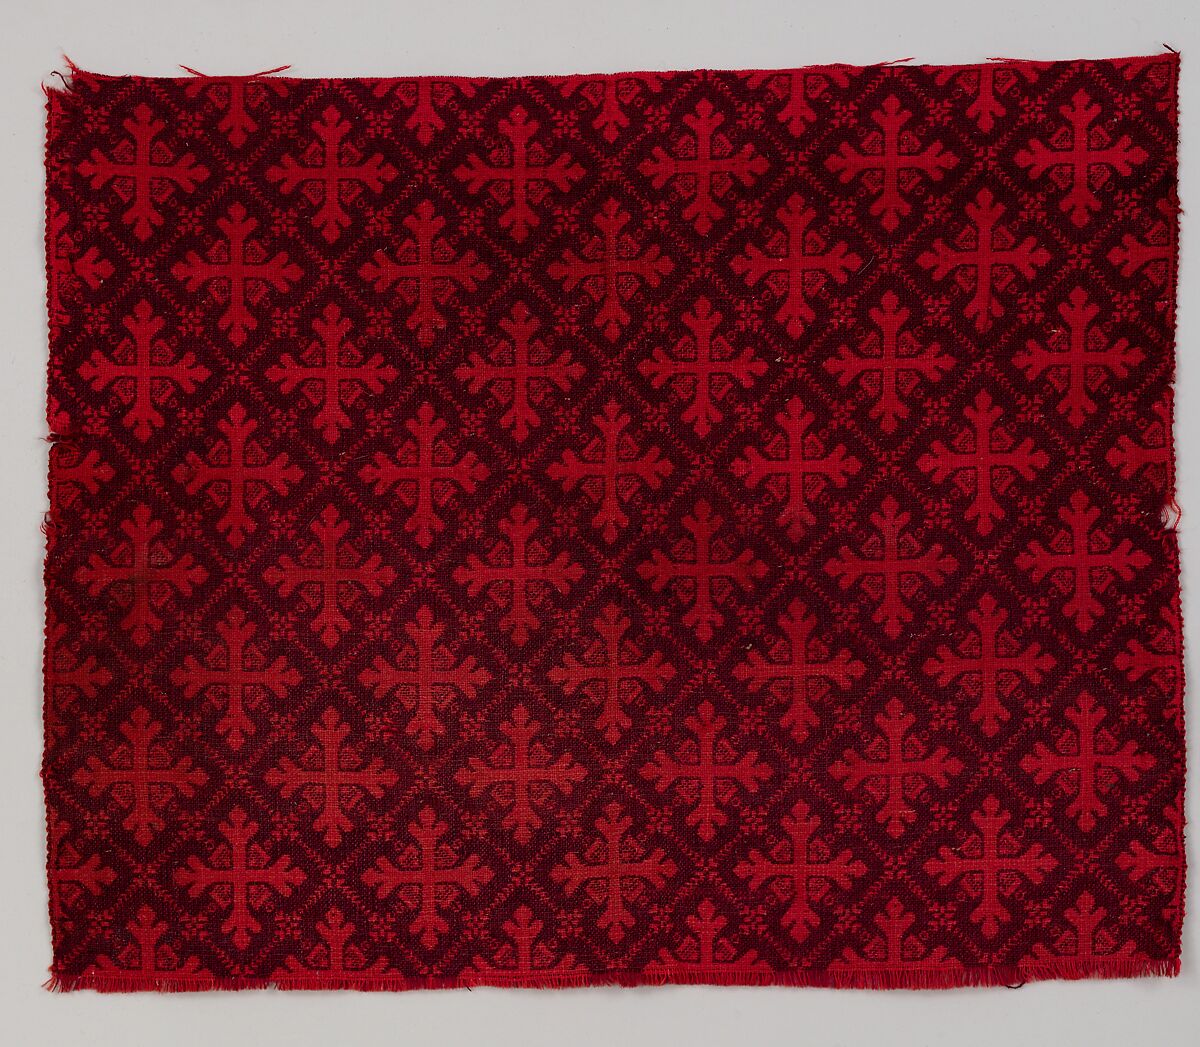 Ingrain carpet piece, Wool, American 